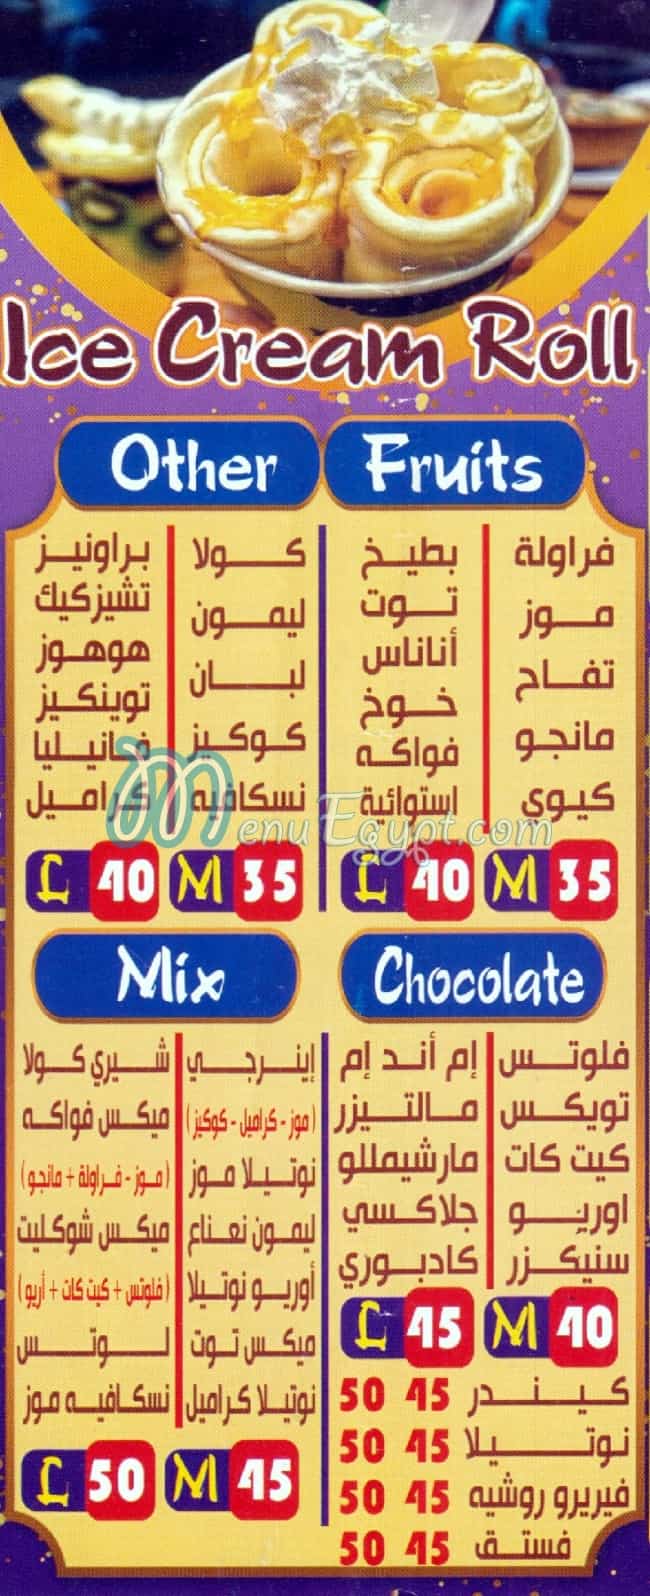 Choco Roll menu